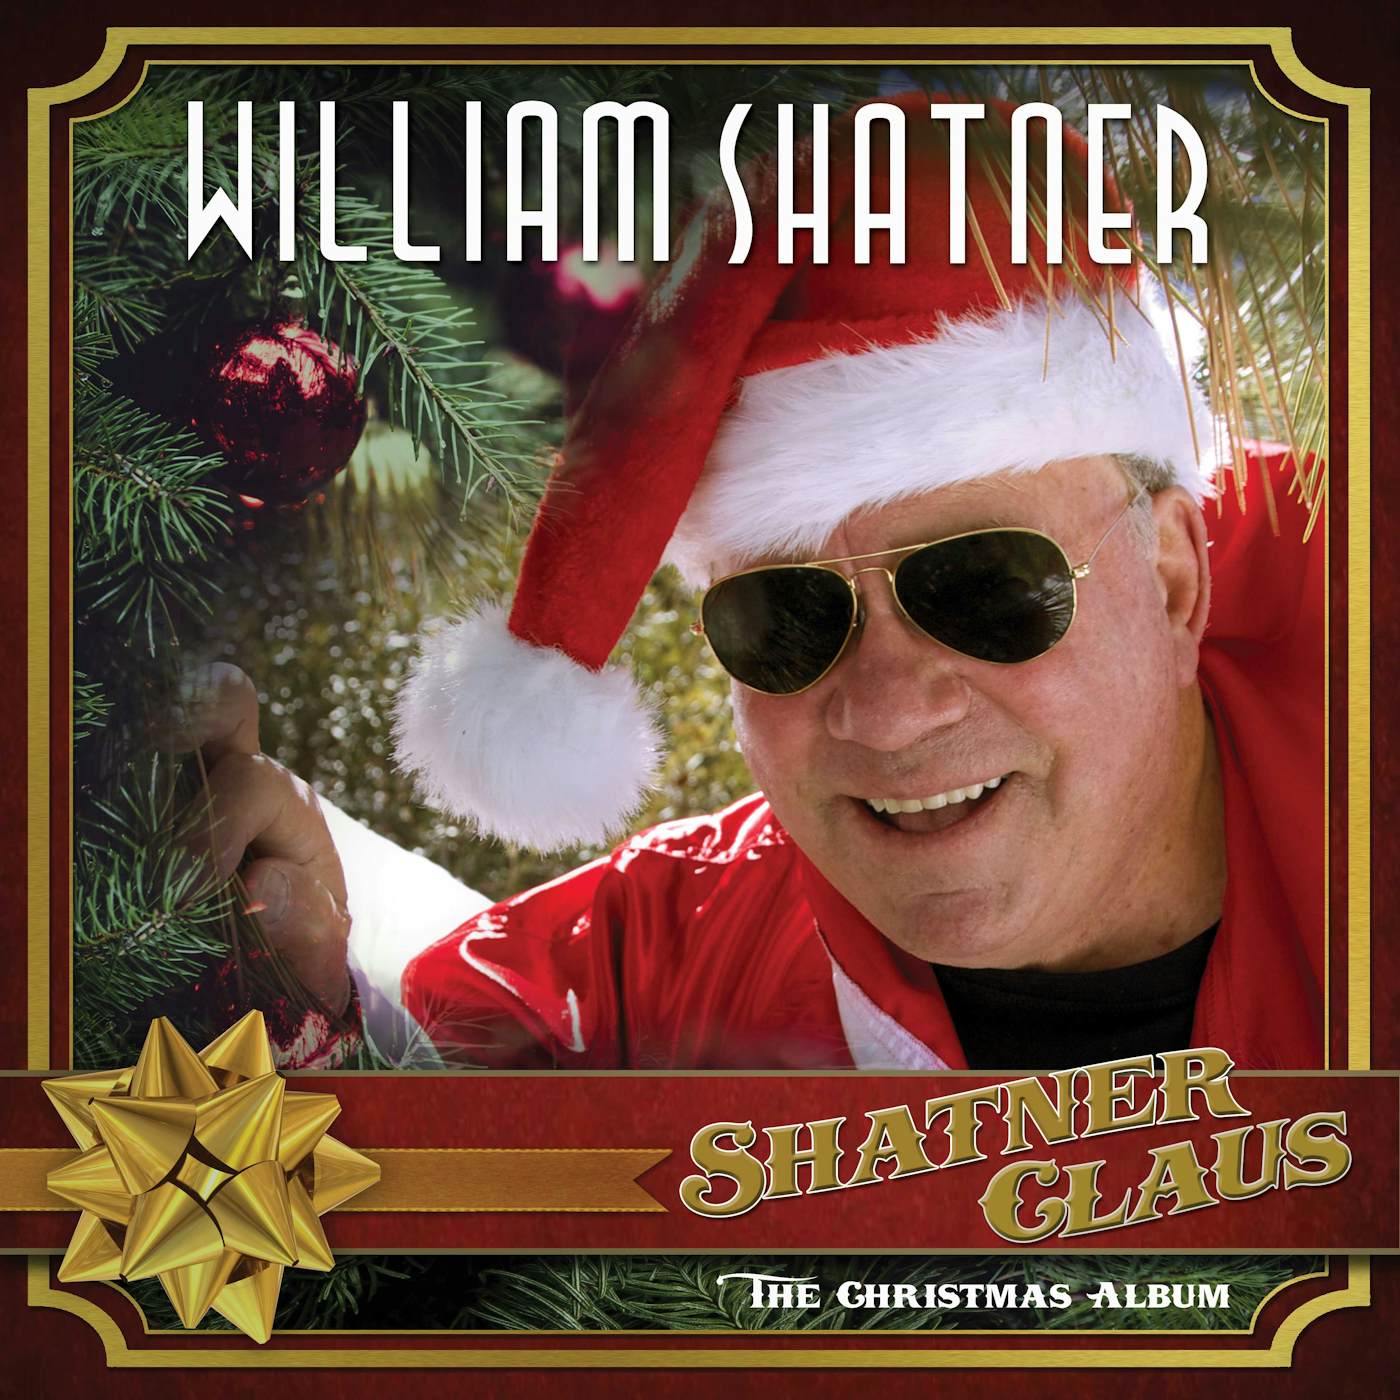 William Shatner Shatner Claus - The Christmas Album Vinyl Record